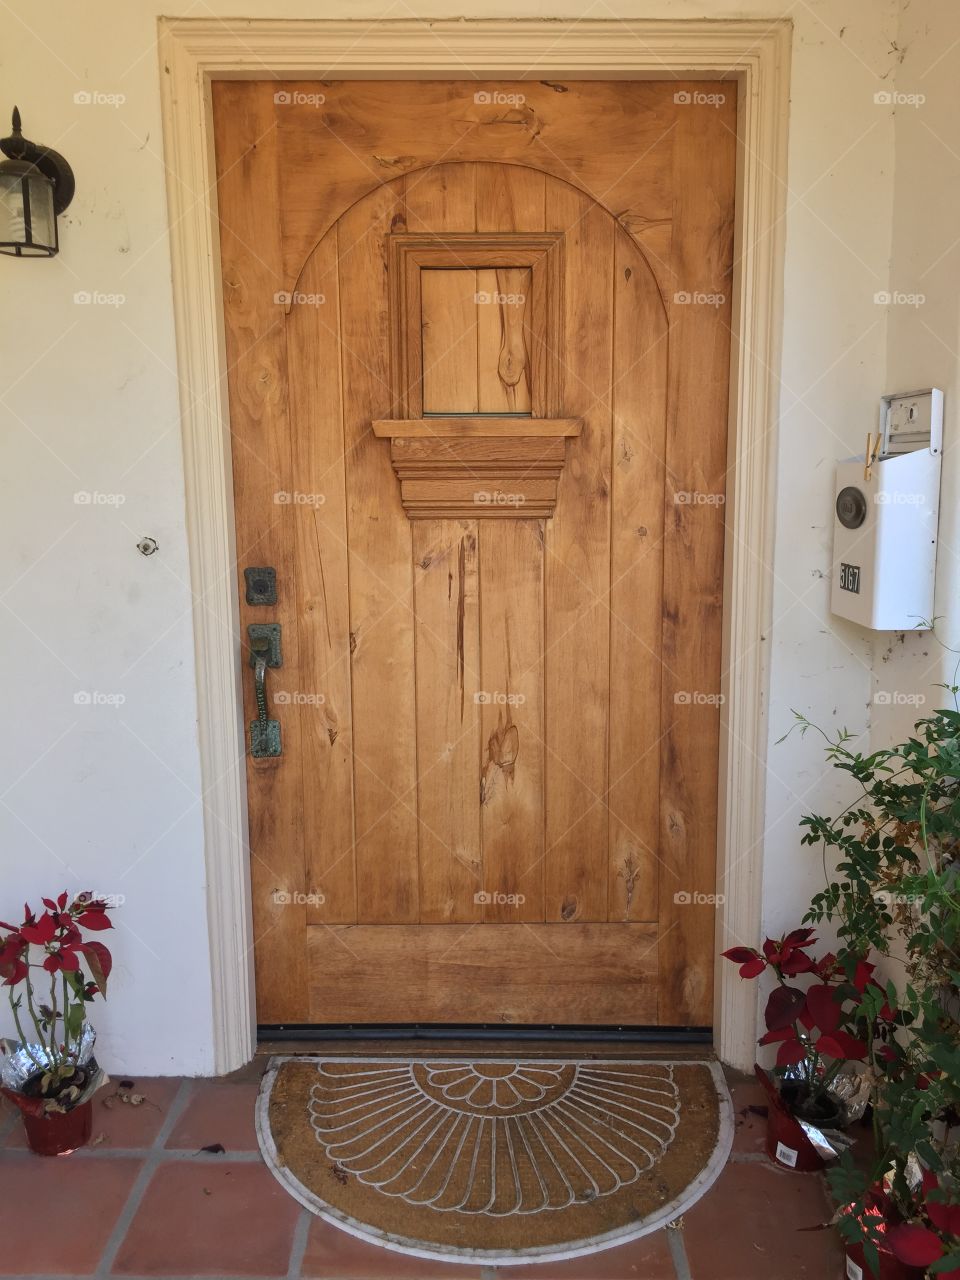 Rustic Door. Entryway with closed wooden door